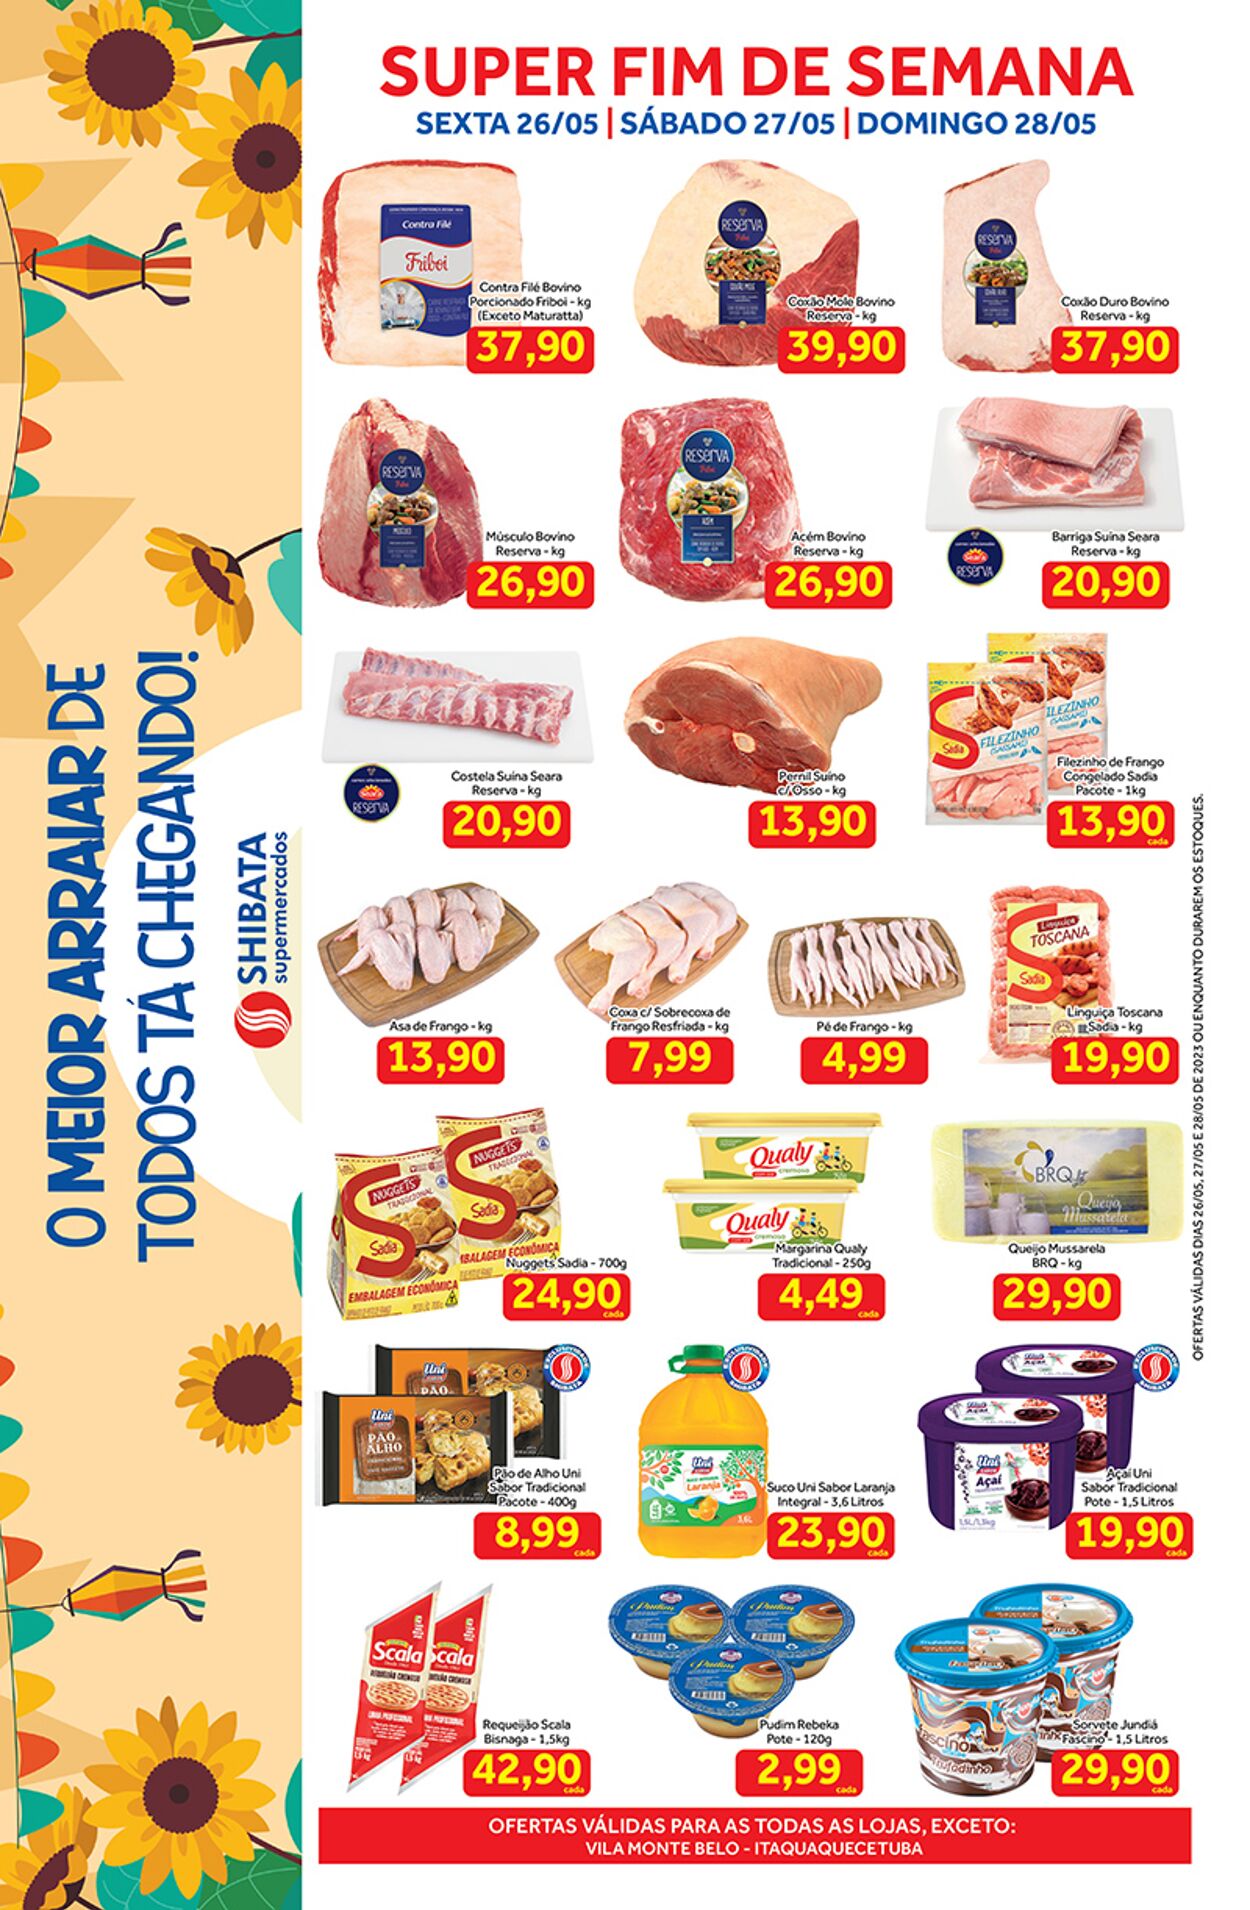 Folheto Shibata Supermercados 27.05.2023 - 28.05.2023